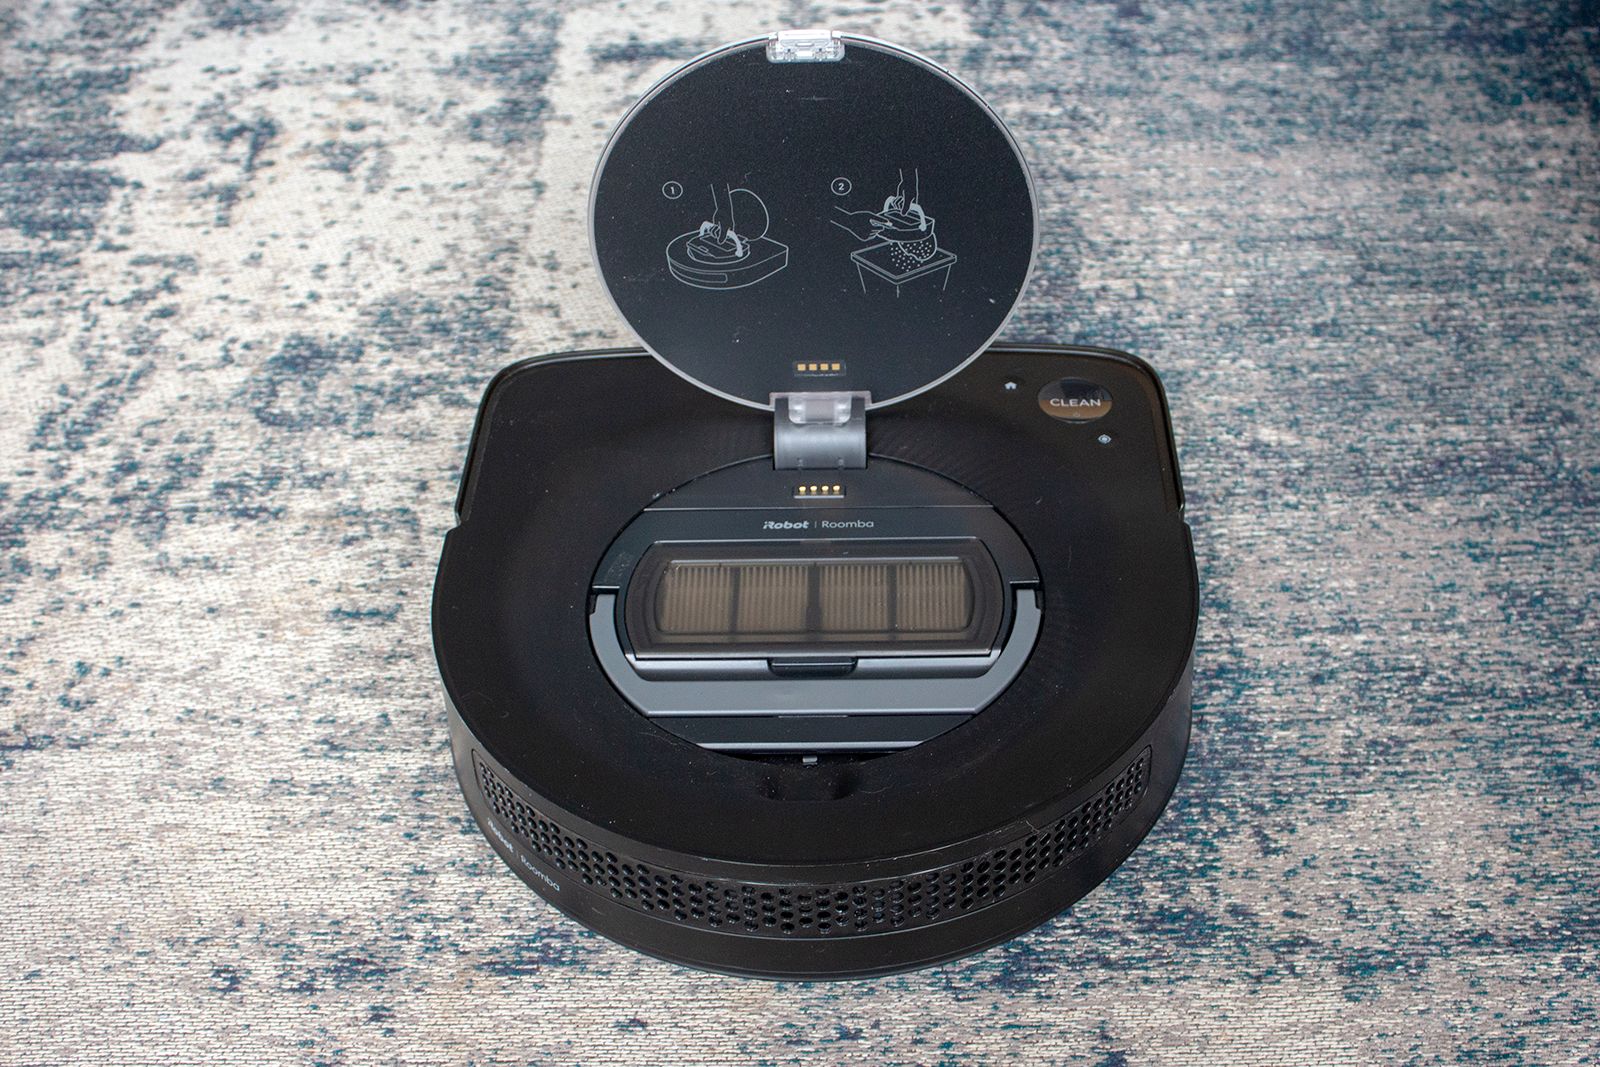 Robot aspirador Roomba® s9+ con vaciado automático, iRobot®